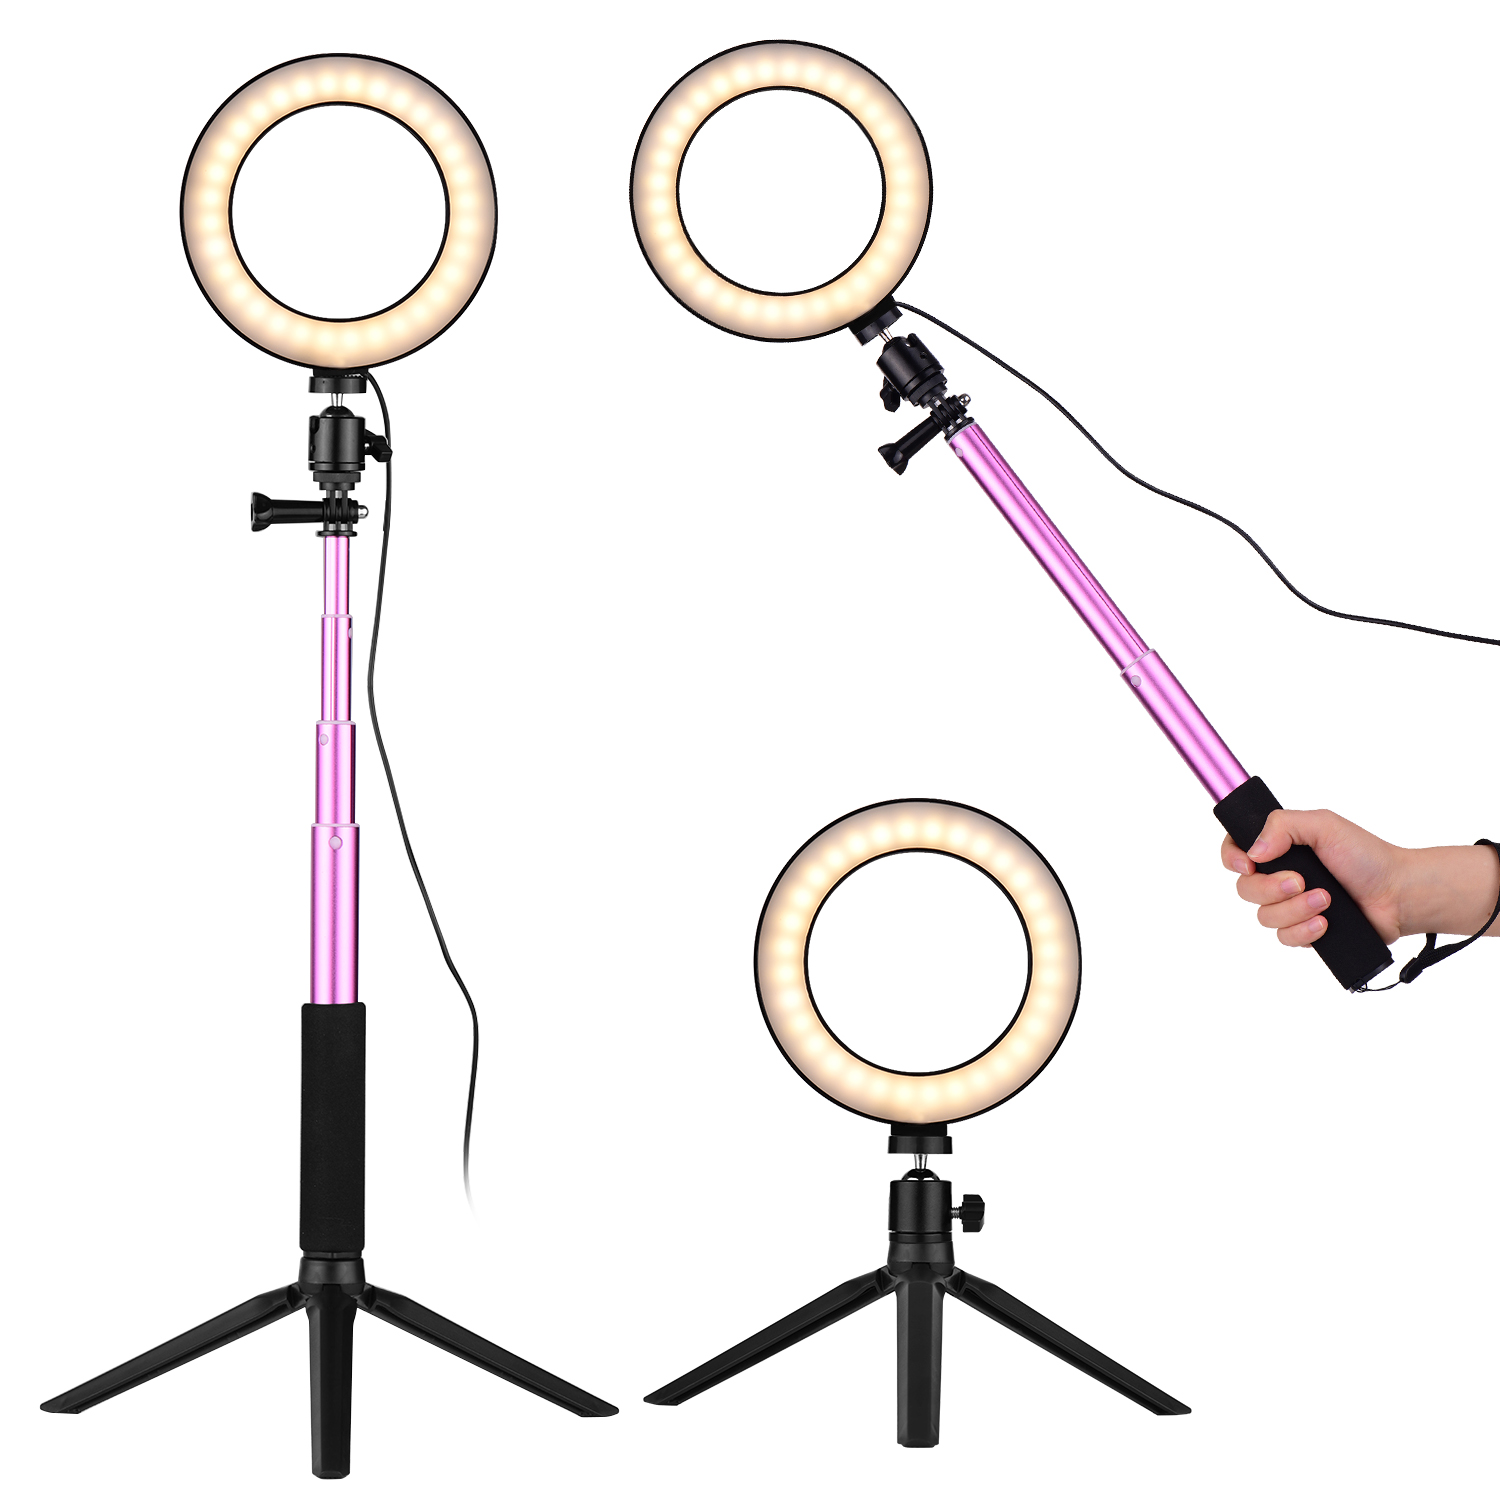 6 pouces Mini LED Anneau Lumière Pographie Lampe Dimmable 3 Modes D'éclairage Mini Bureau Trépied Ballhead pour Selfie Pography274o